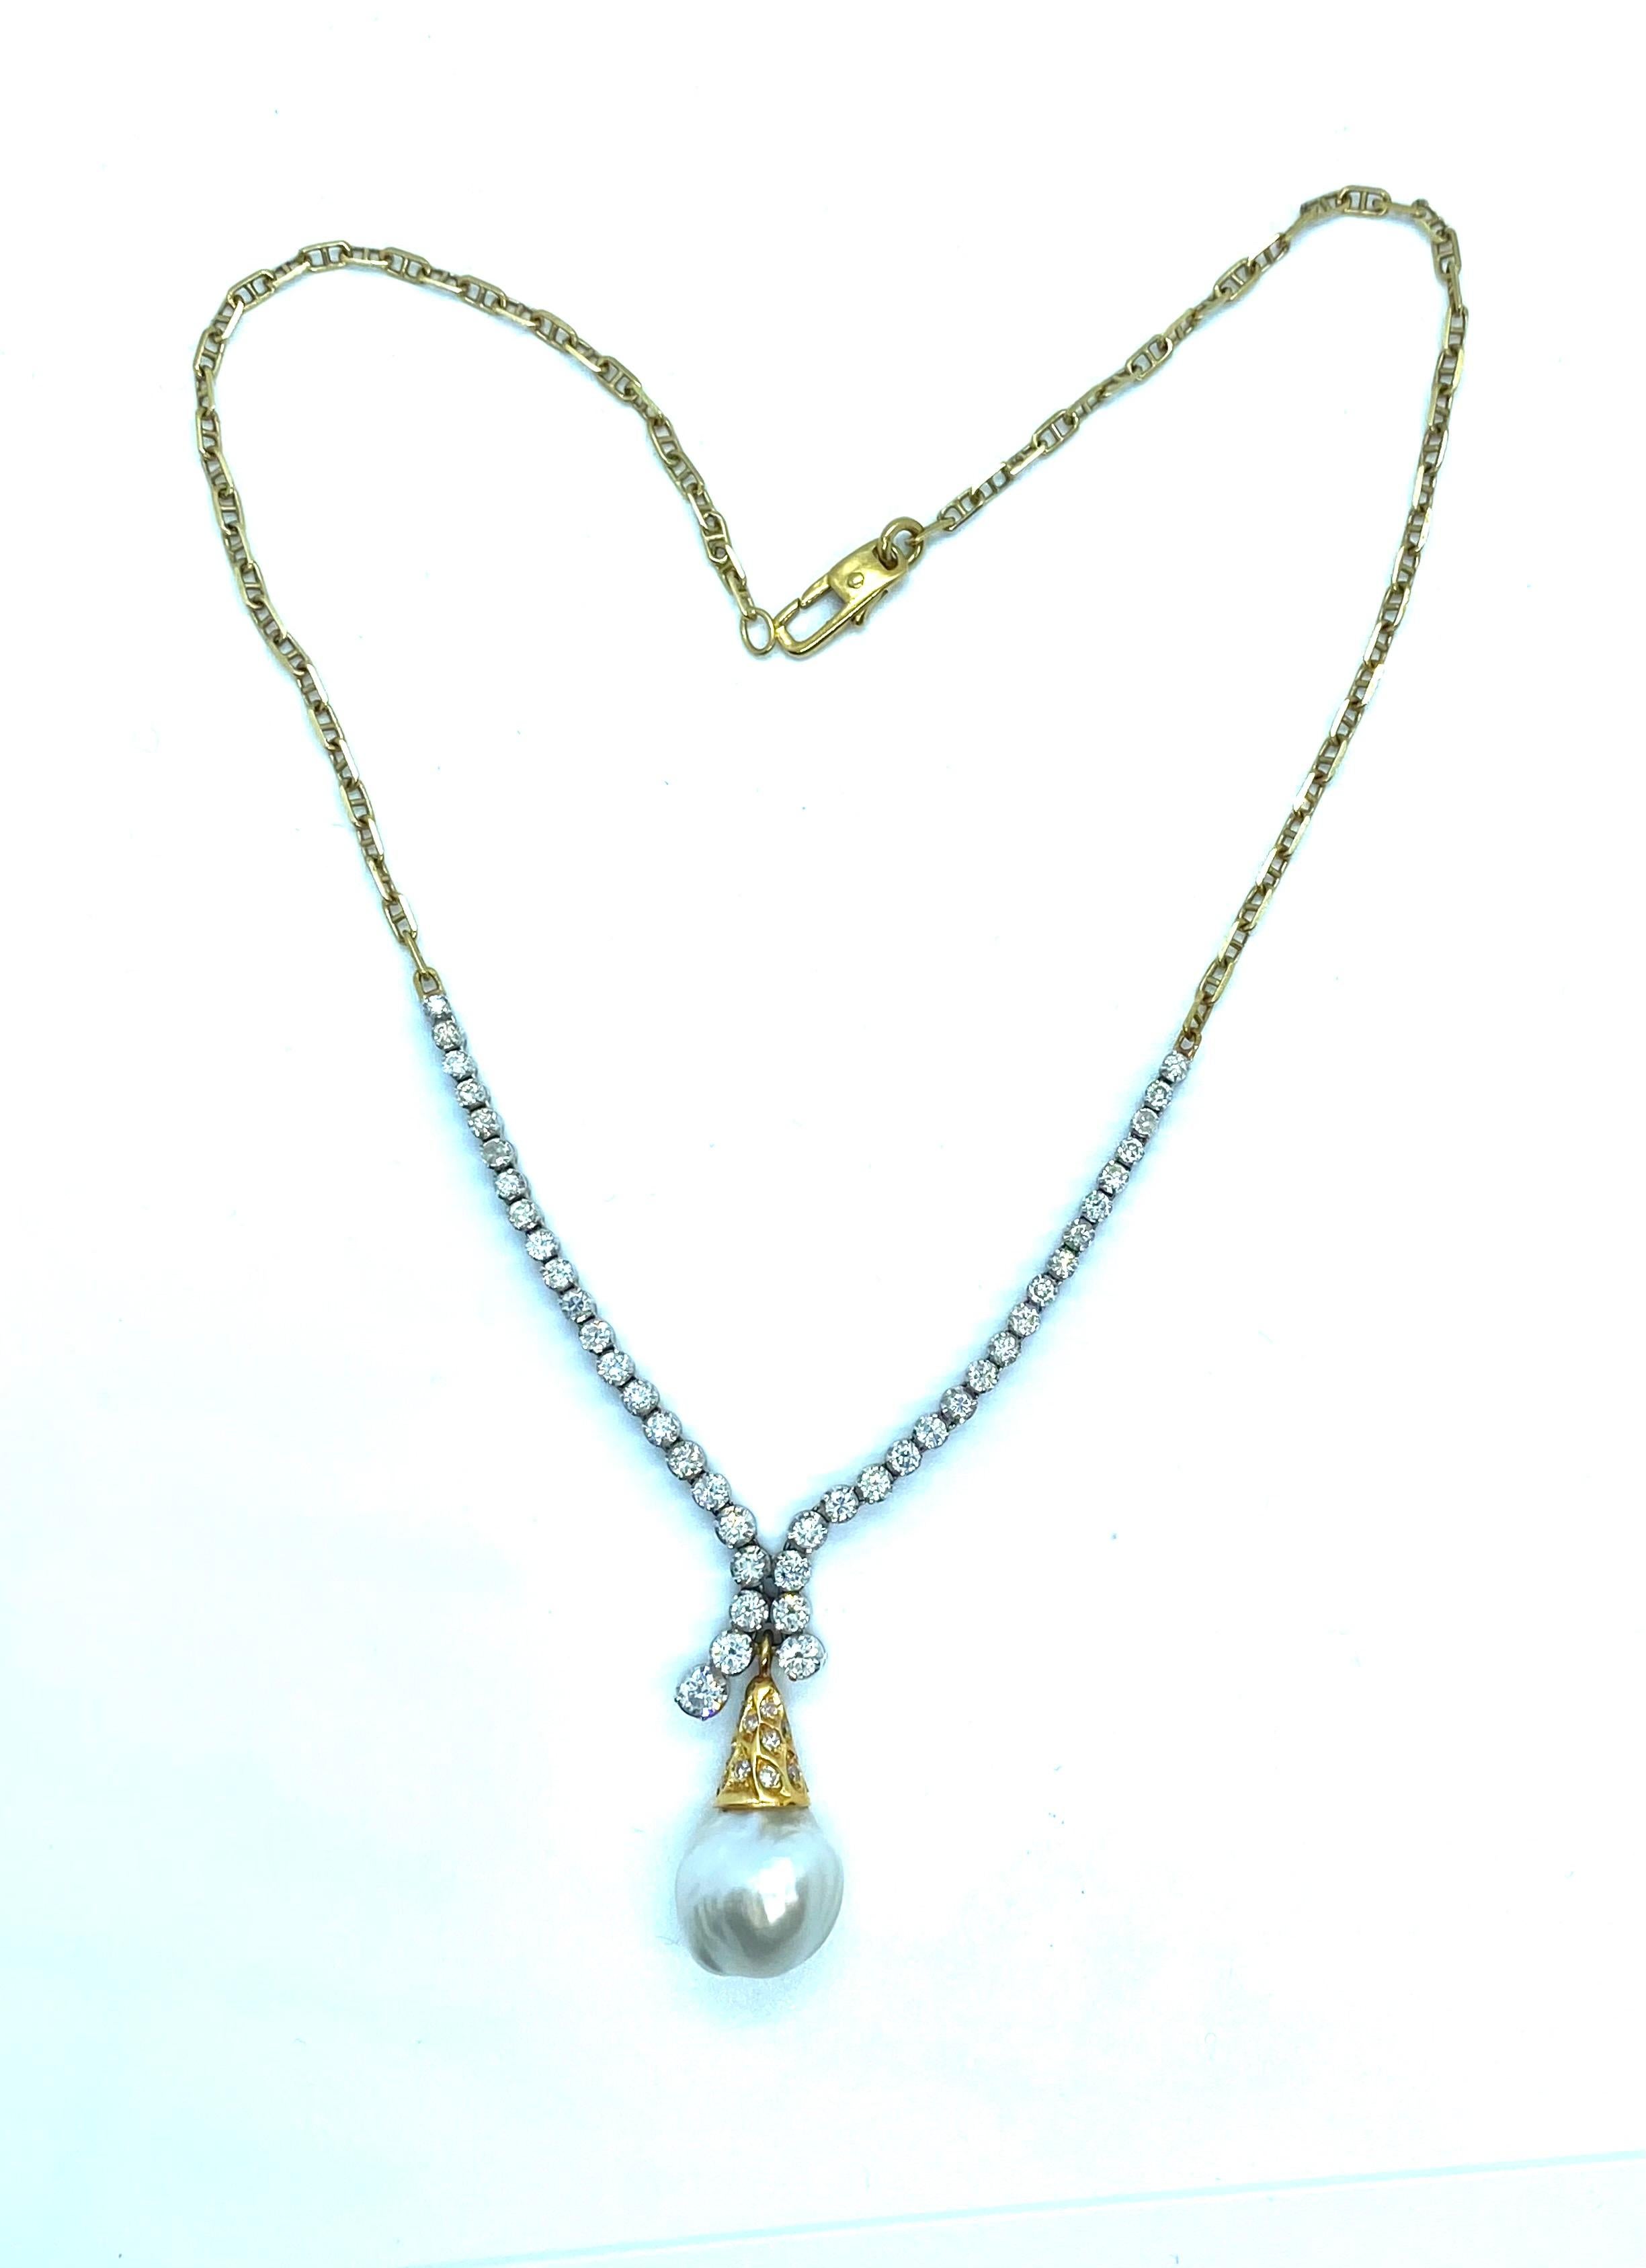 Außergewöhnliches Zwillingspaar, bestehend aus Halskette und hängenden Ohrringen aus Gelb- und Weißgold, mit natürlichen Diamanten und Barockperlen.
Das Collier hat eine Gesamtlänge von 45 cm.
Es trägt Diamanten für ct. 2,60 insgesamt und die Perle